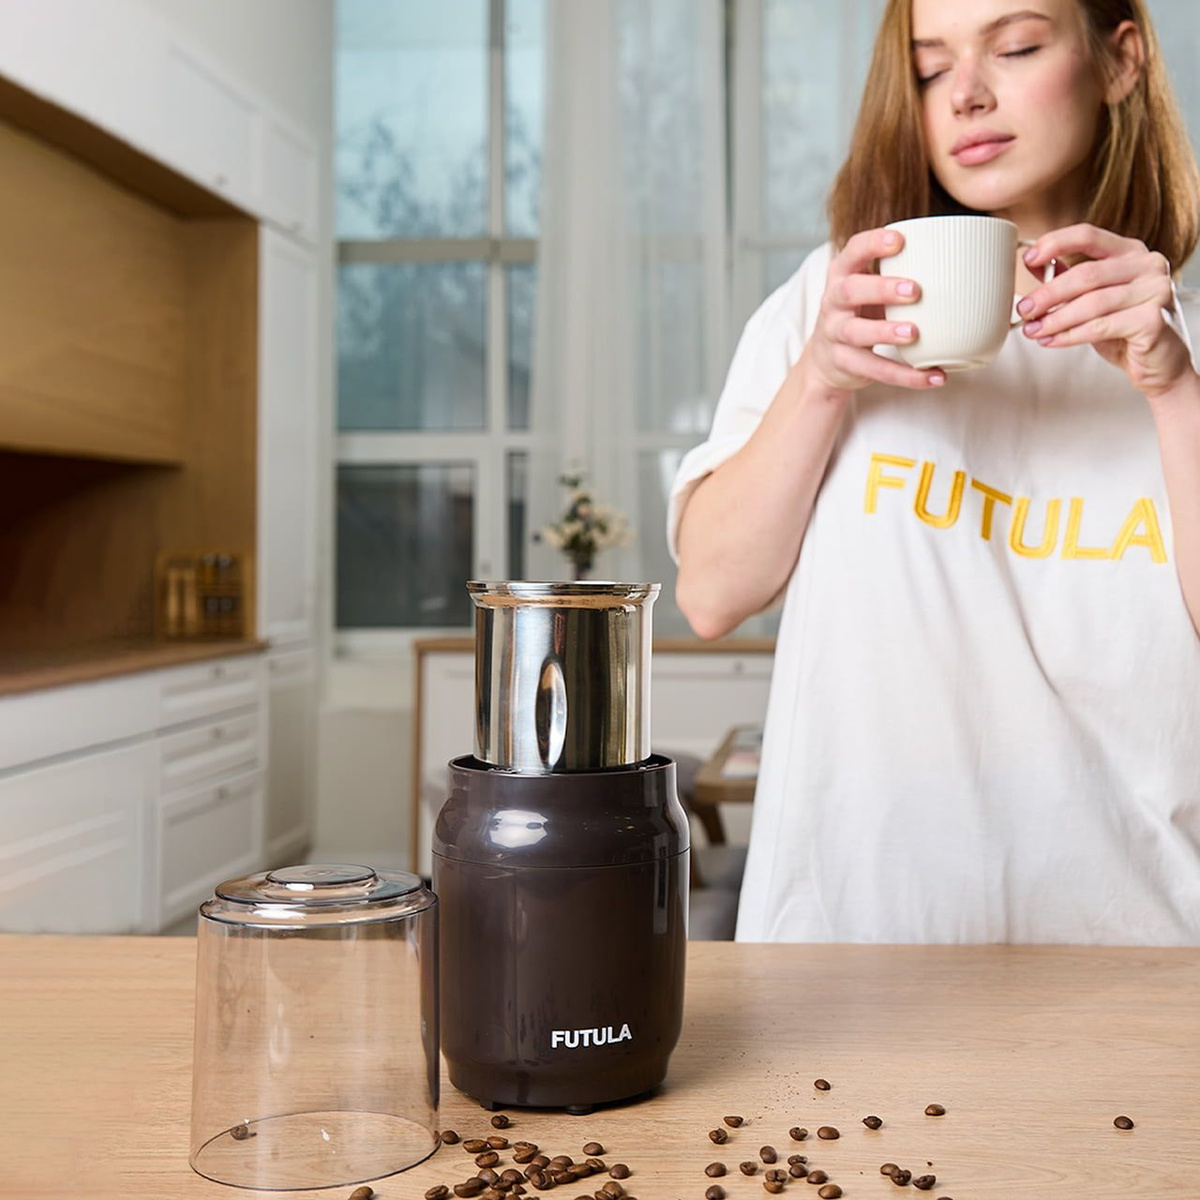 Futula CG8 станет неотъемлемой частью вашего ритуала утреннего кофе, позволяя вам насладиться ароматным напитком, который подарит заряд энергии и бодрости на весь день